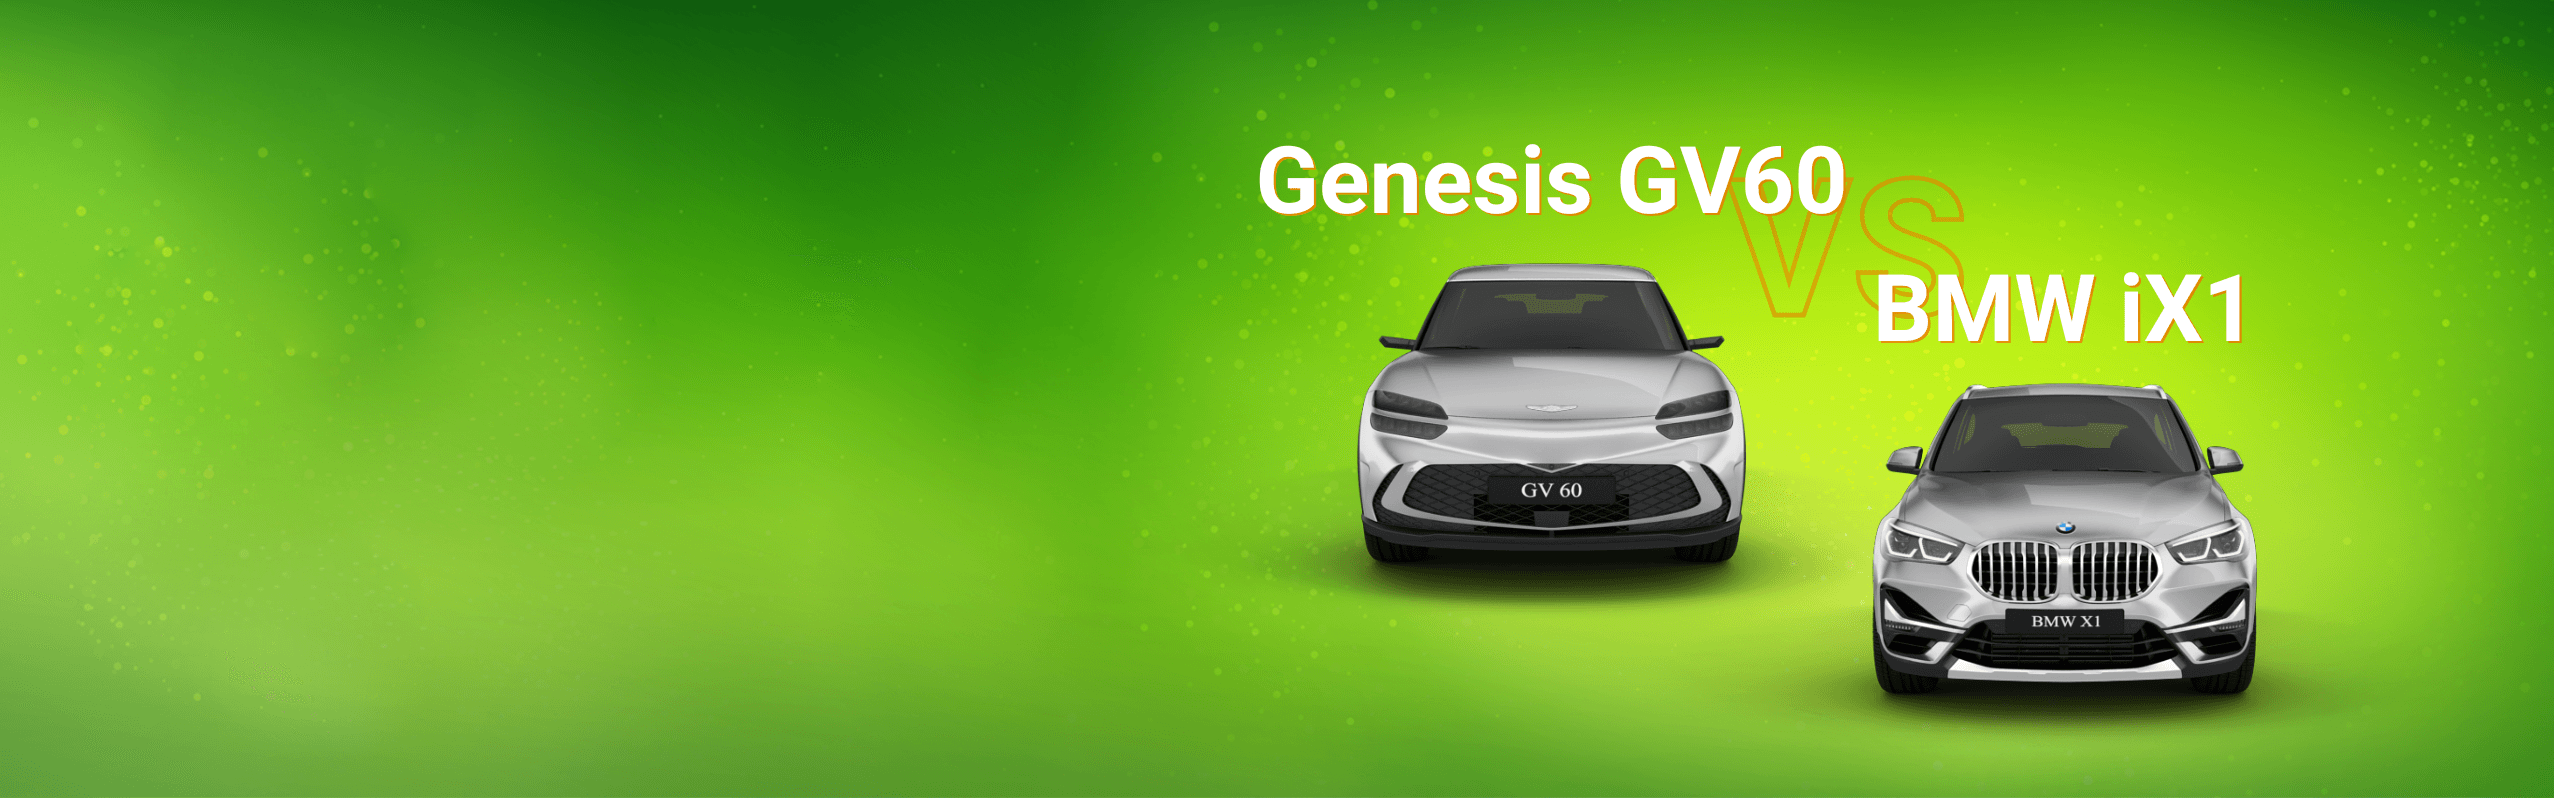 BMW-iX1-Genesis-GV60